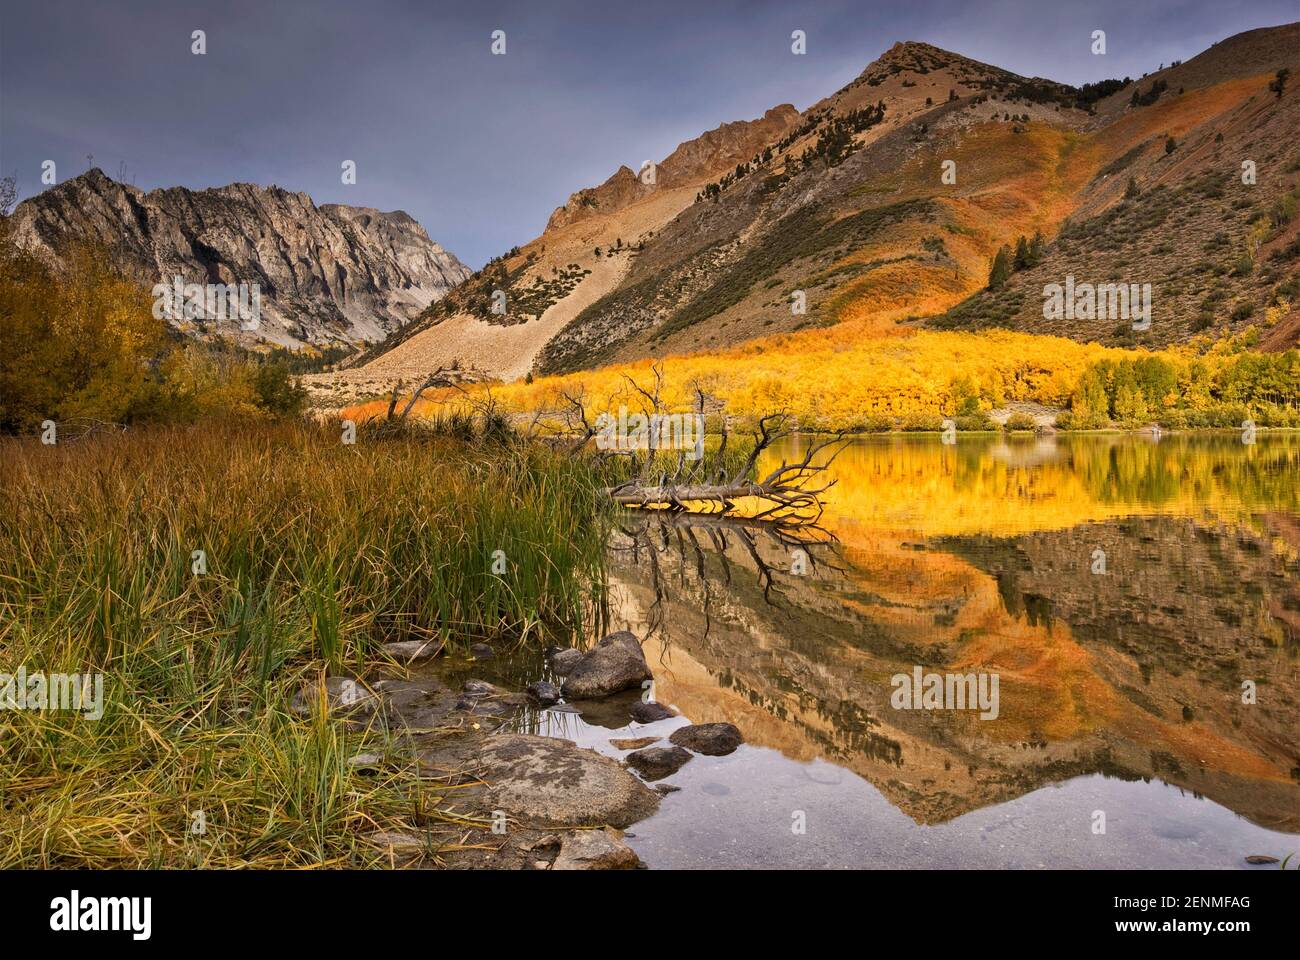 Dans le bassin nord du lac Sabrina en automne Évolution Région, John Muir Wilderness, est de la Sierra Nevada, Californie, USA Banque D'Images